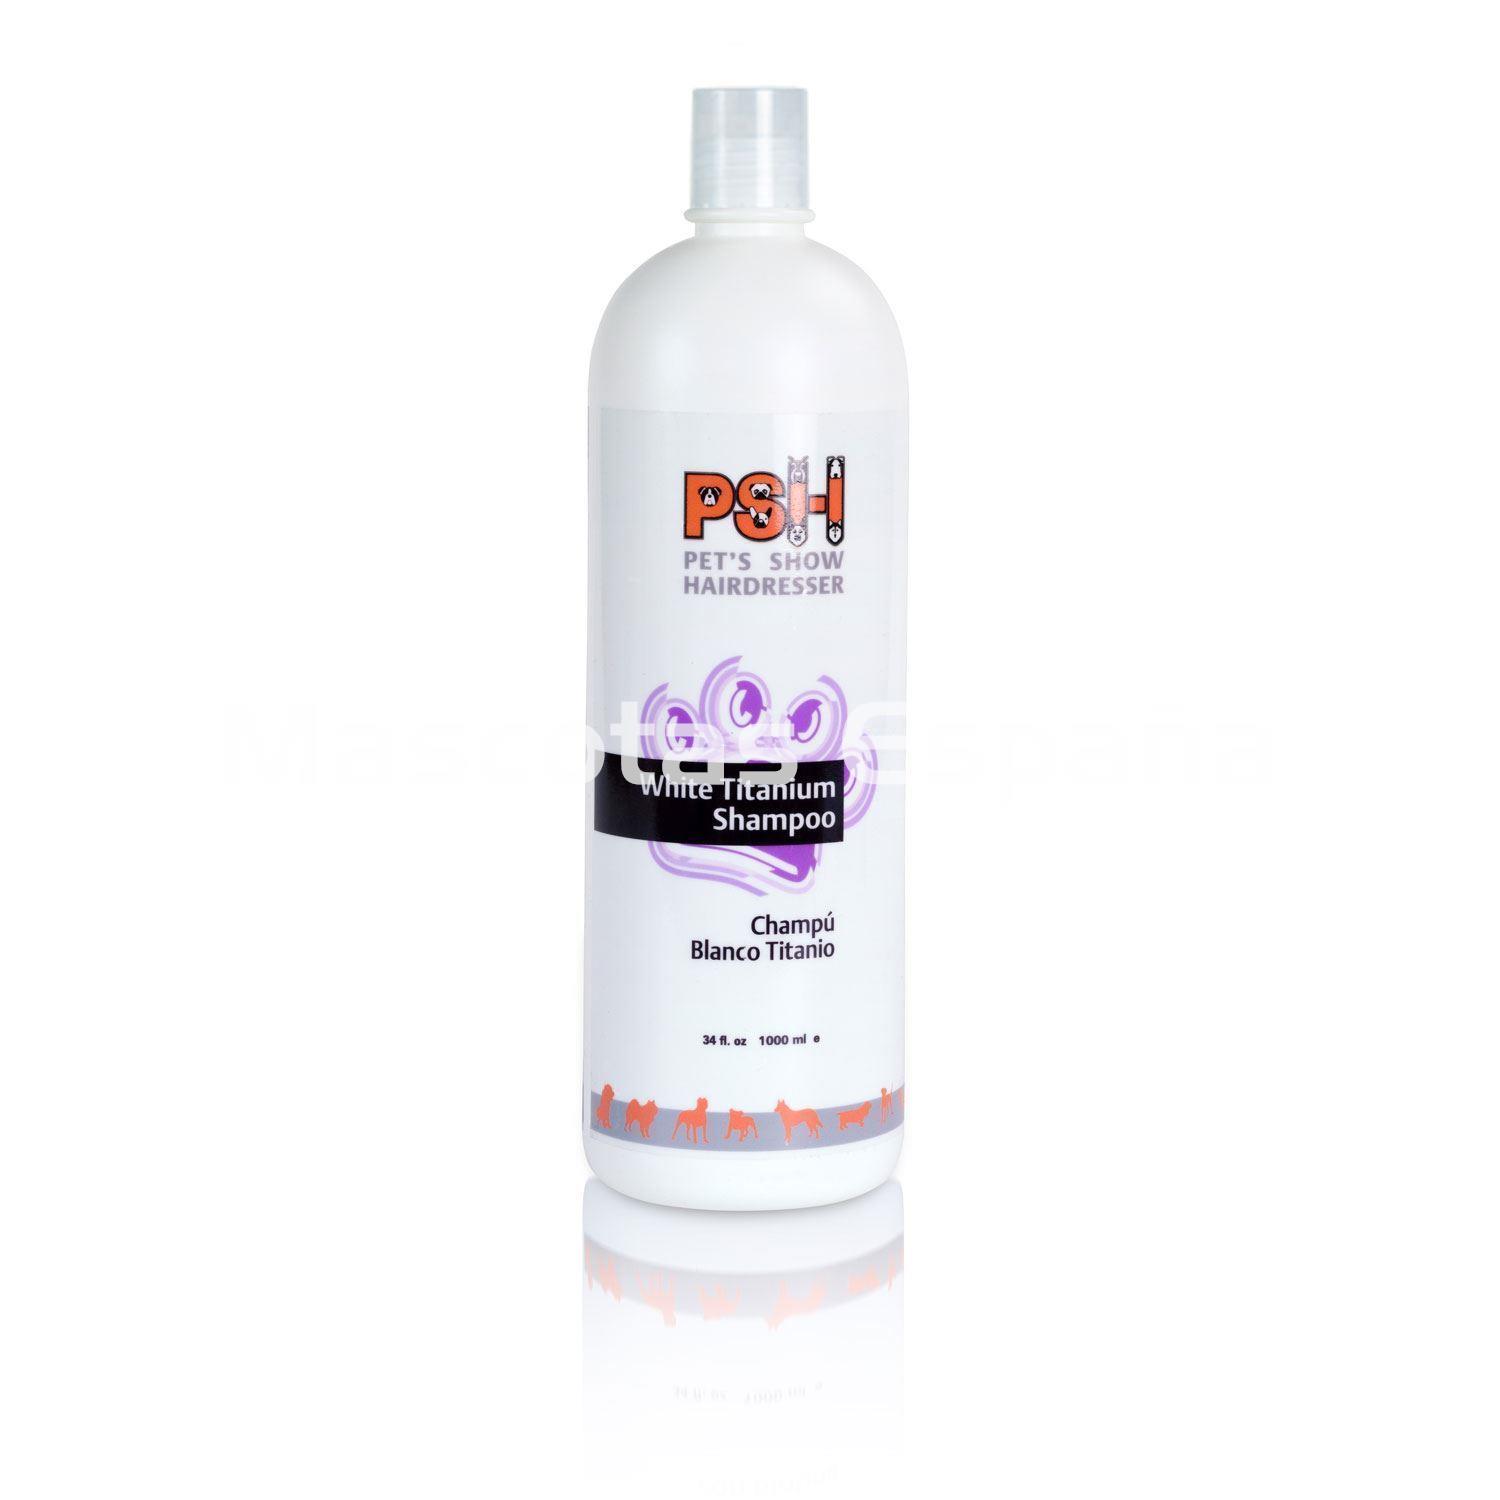 PSH White Titanium Shampoo (Champú Blanco Titanio) 1L - Imagen 1